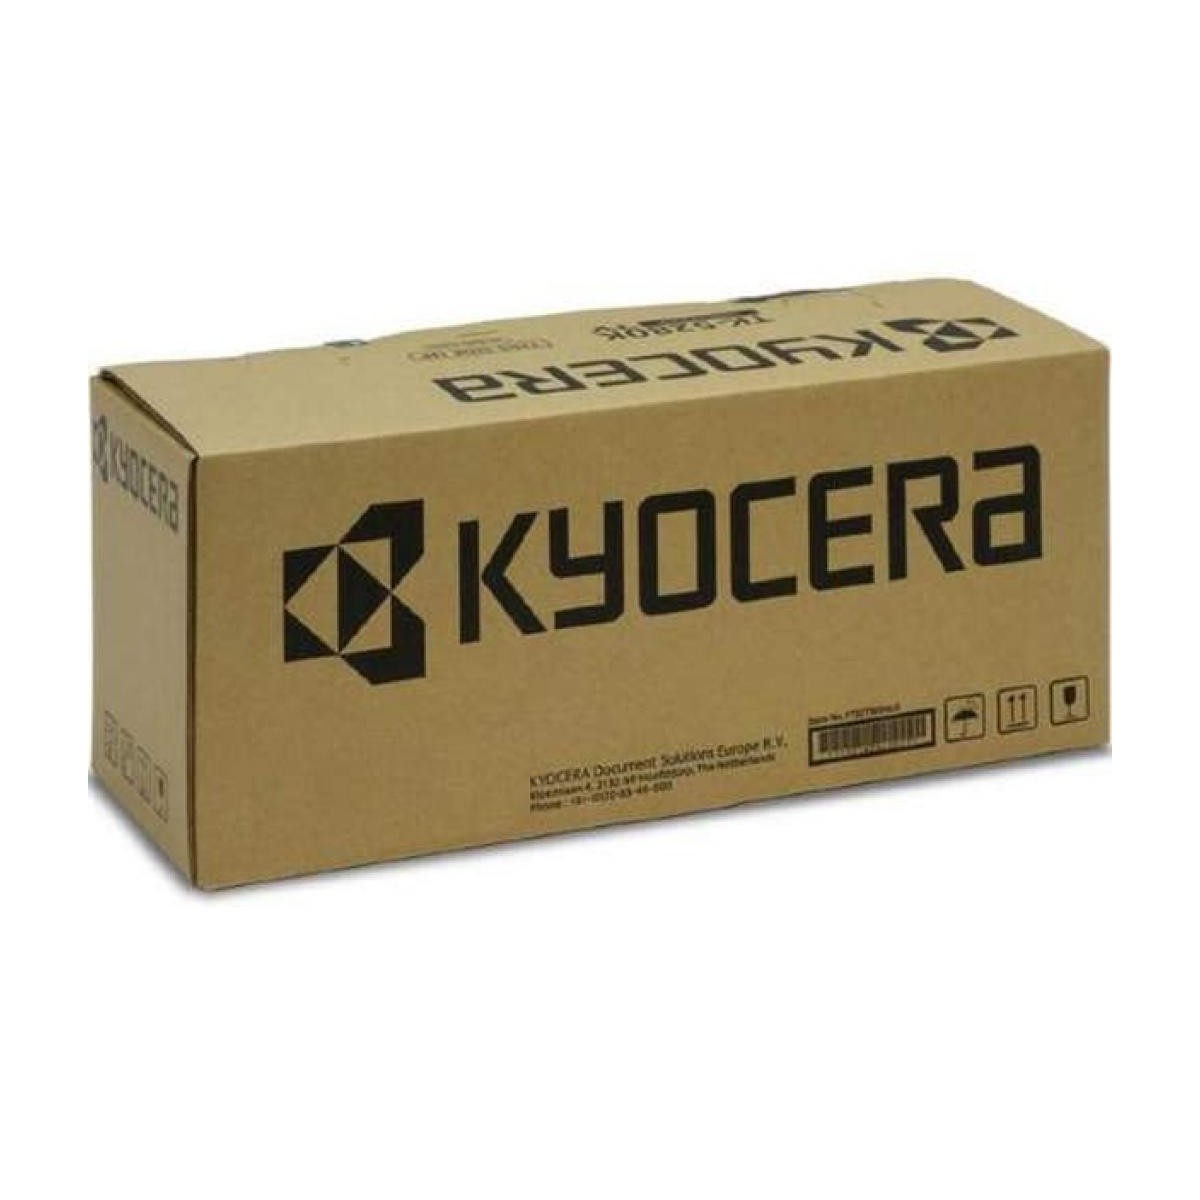 Kyocera DK-8550 - Original - Kyocera - ECOSYS P8060cdn - TASKalfa 5002i - 6002i - 5003i - 6003i - 3552ci - 4052ci - 5052ci - 605